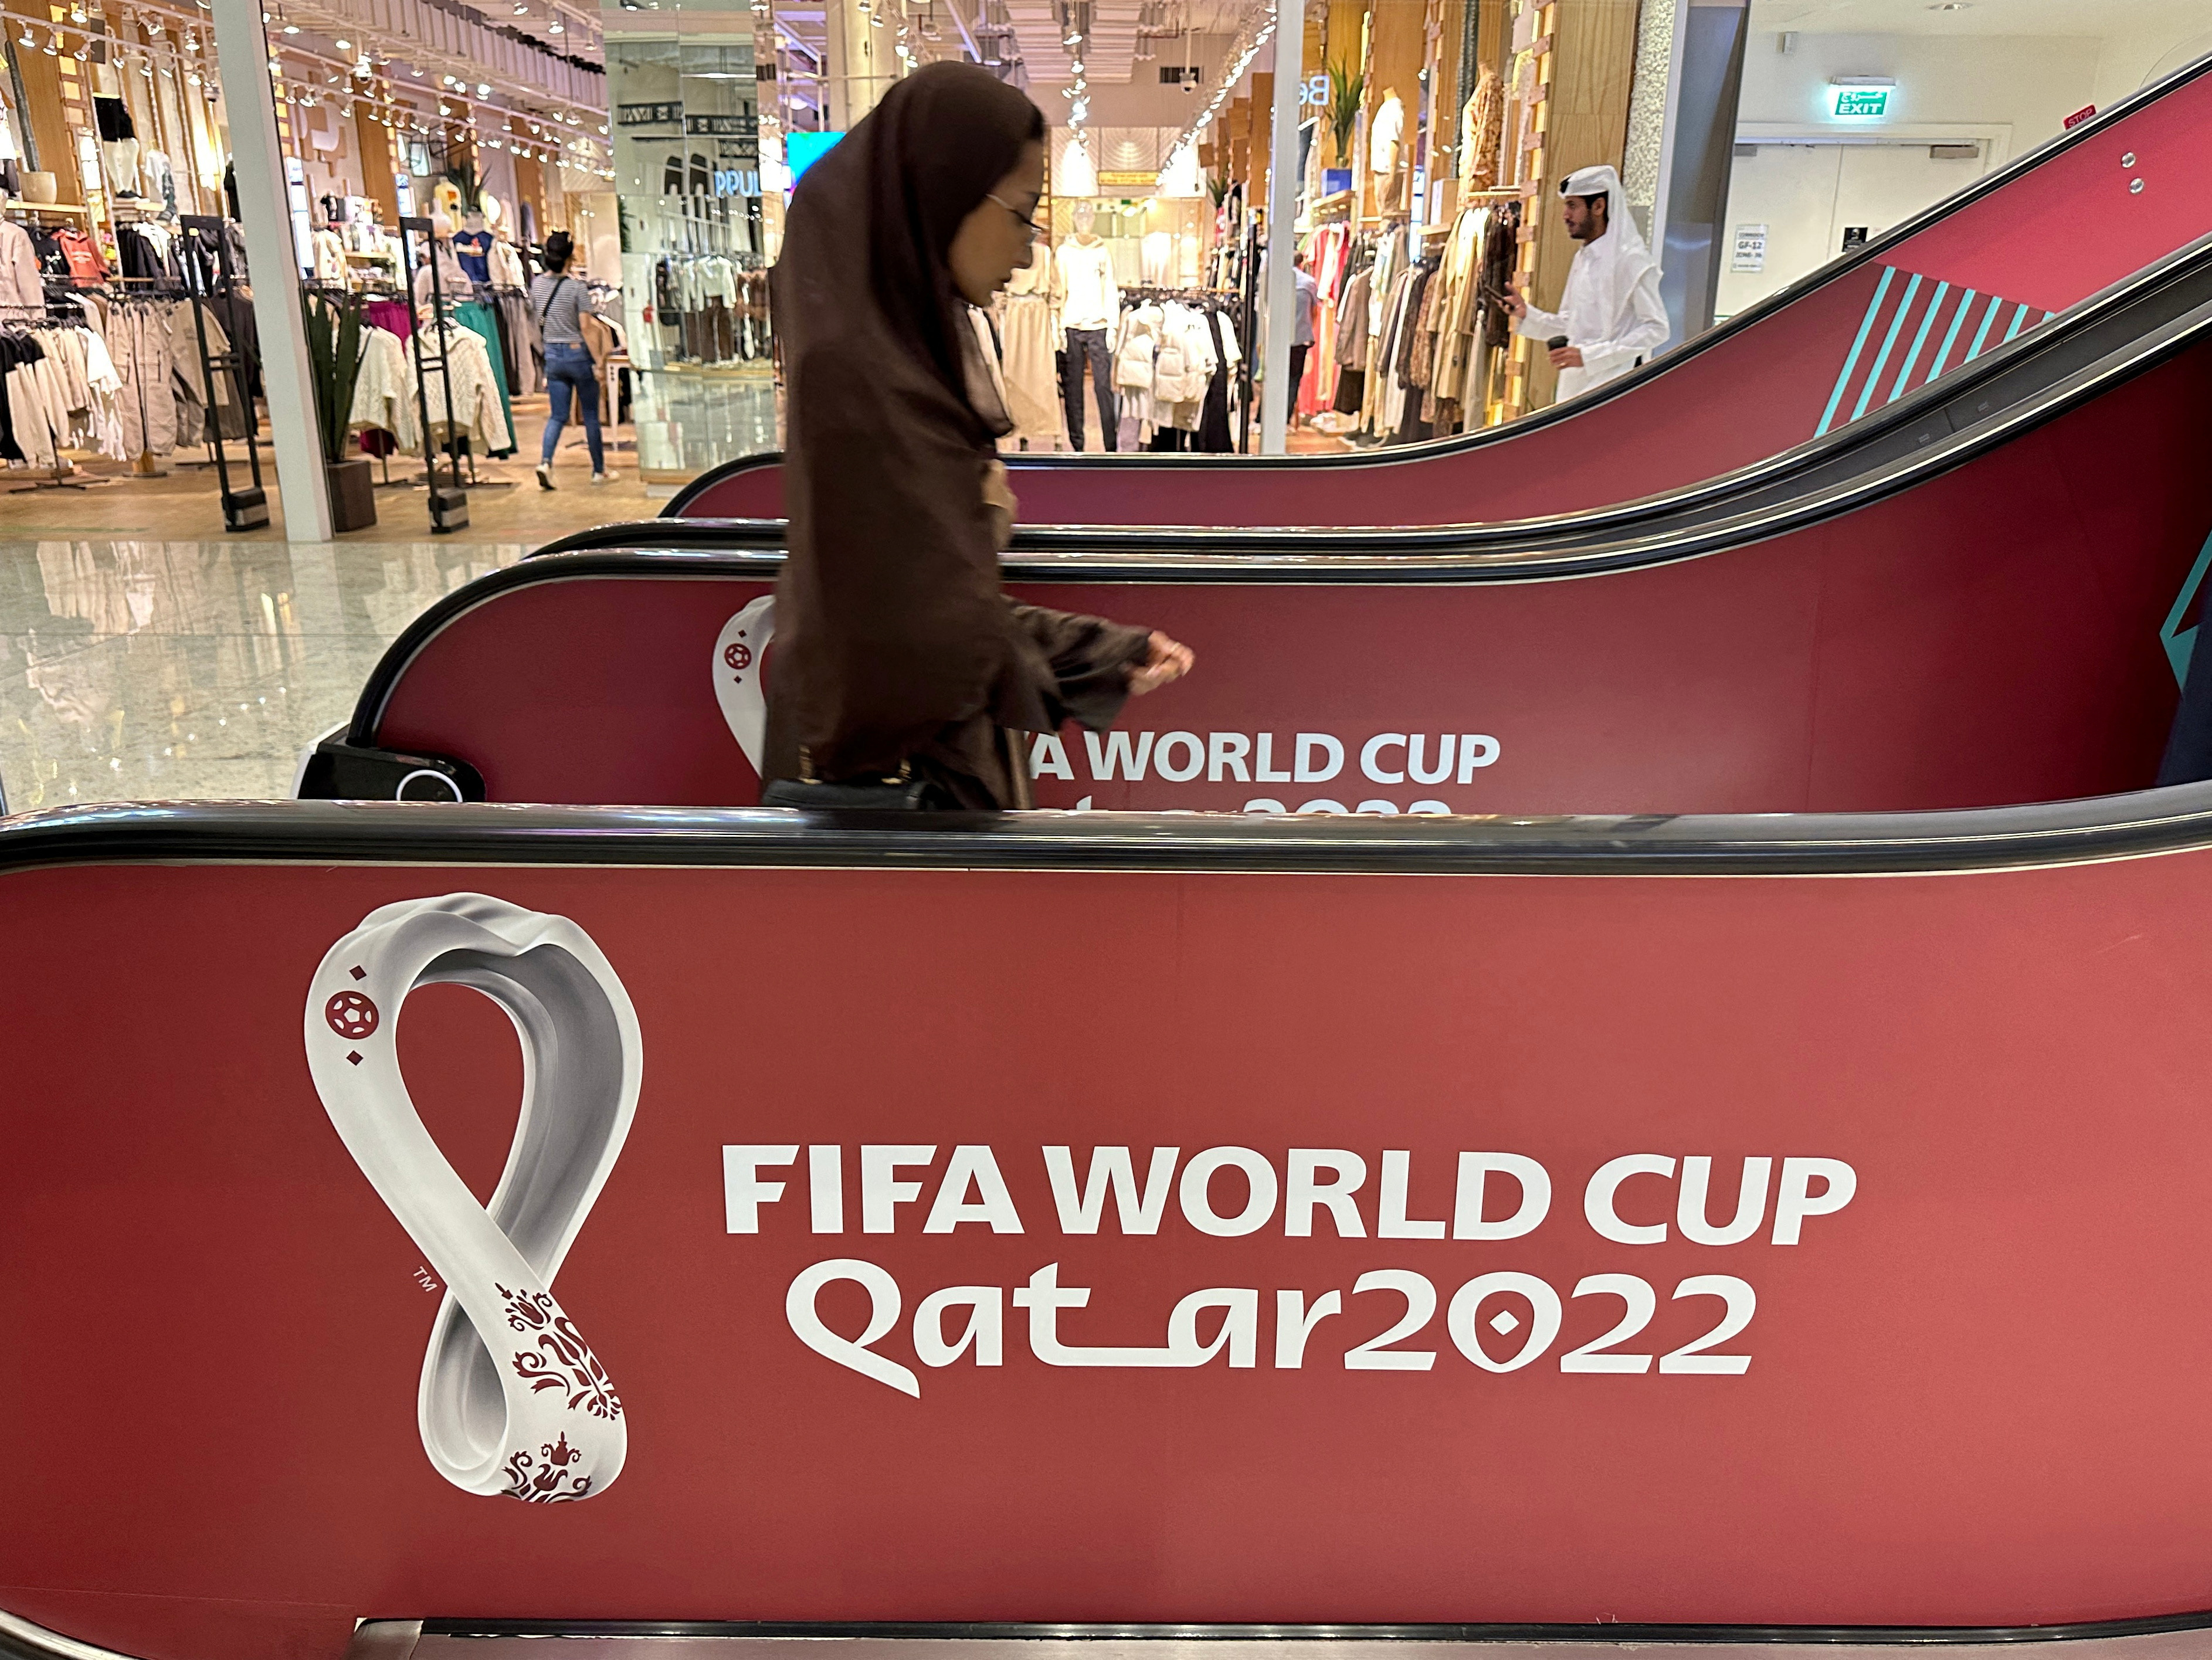 FIFA World Cup Qatar 2022 Magazine Show